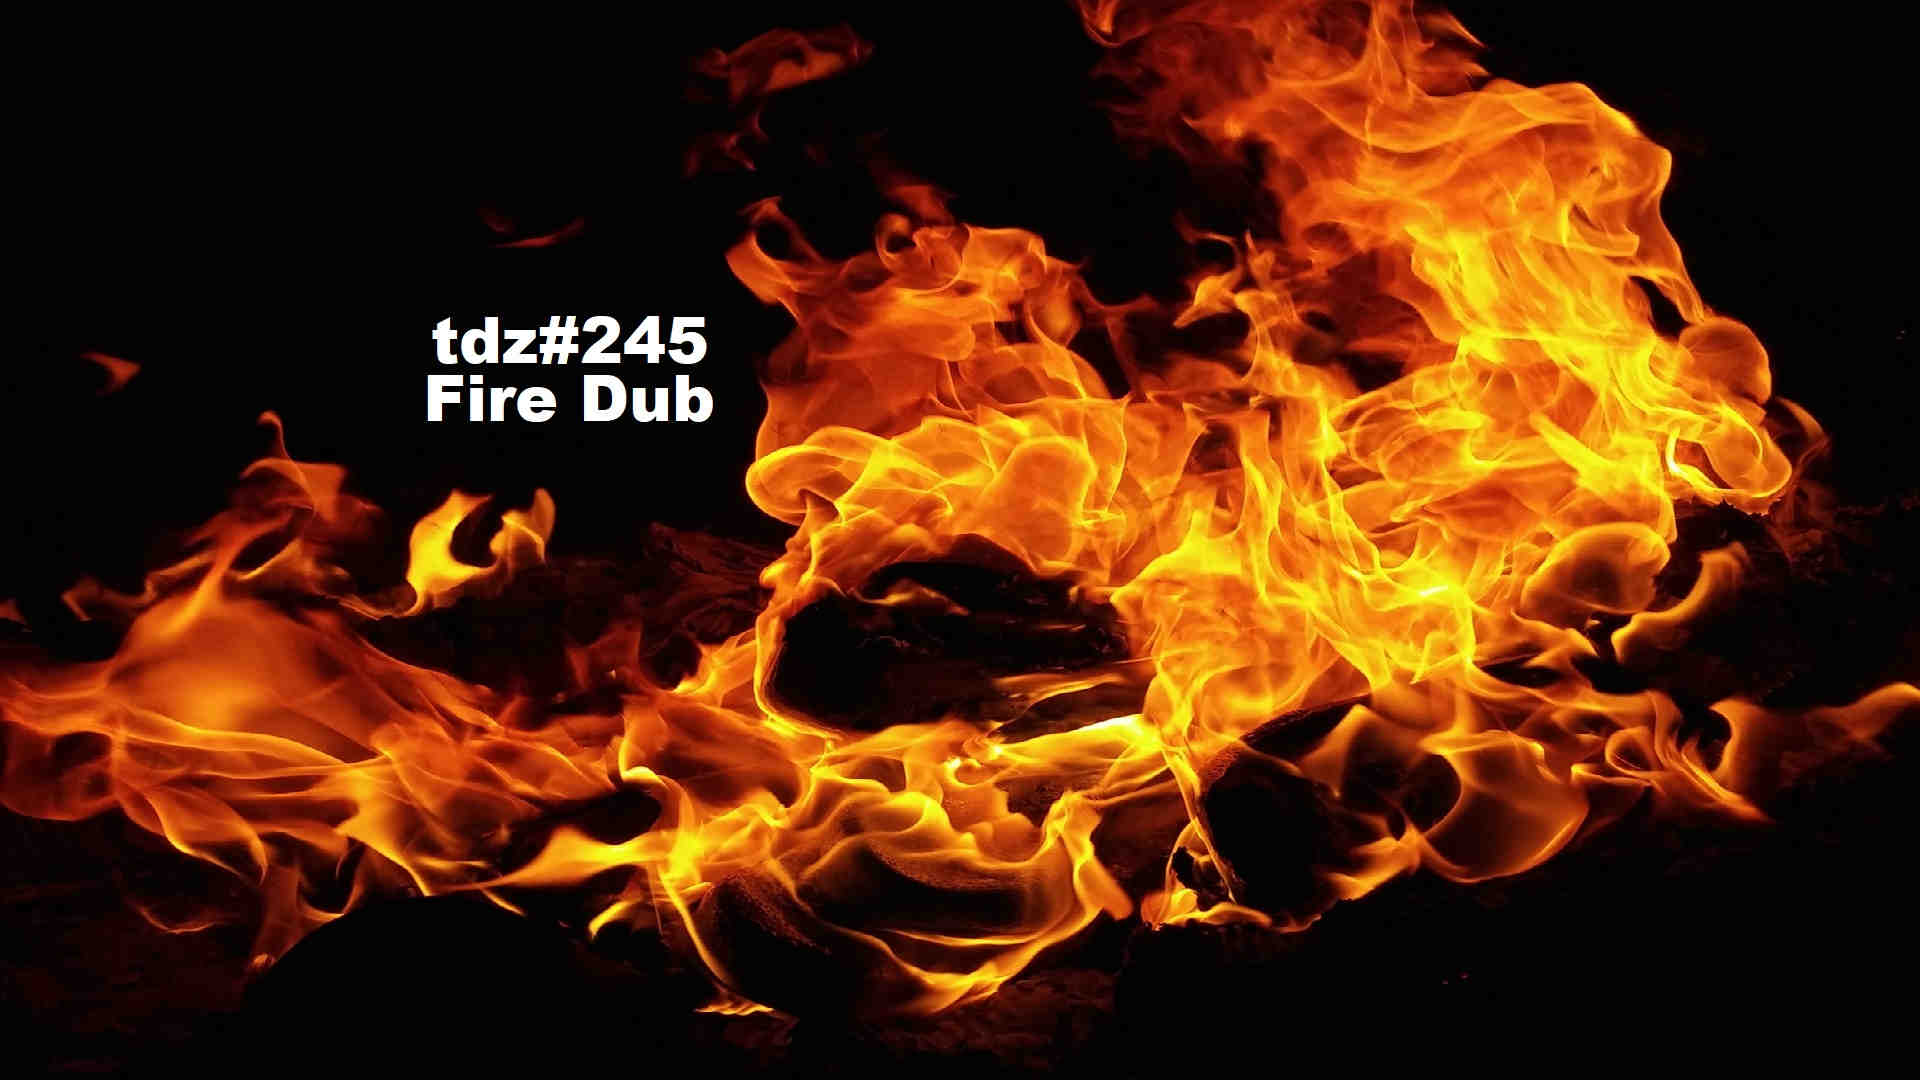 TDZ#245... Fire Dub...